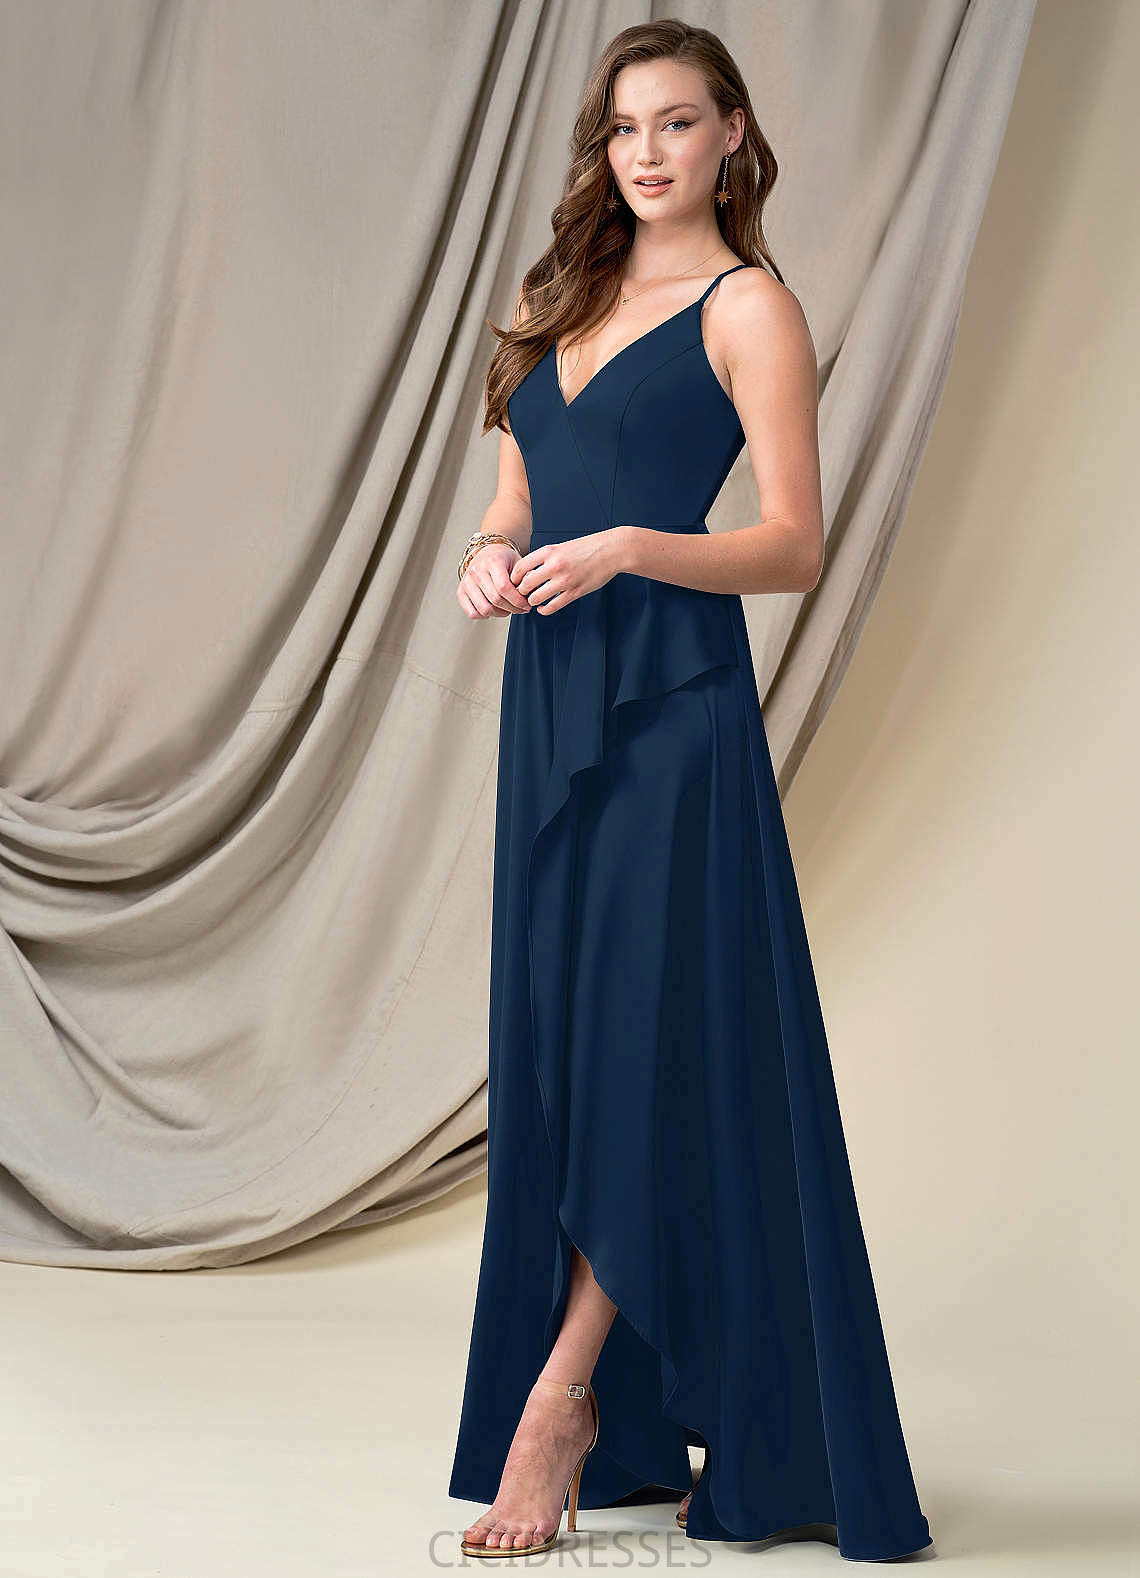 Liliana Natural Waist Floor Length Sleeveless A-Line/Princess V-Neck Bridesmaid Dresses